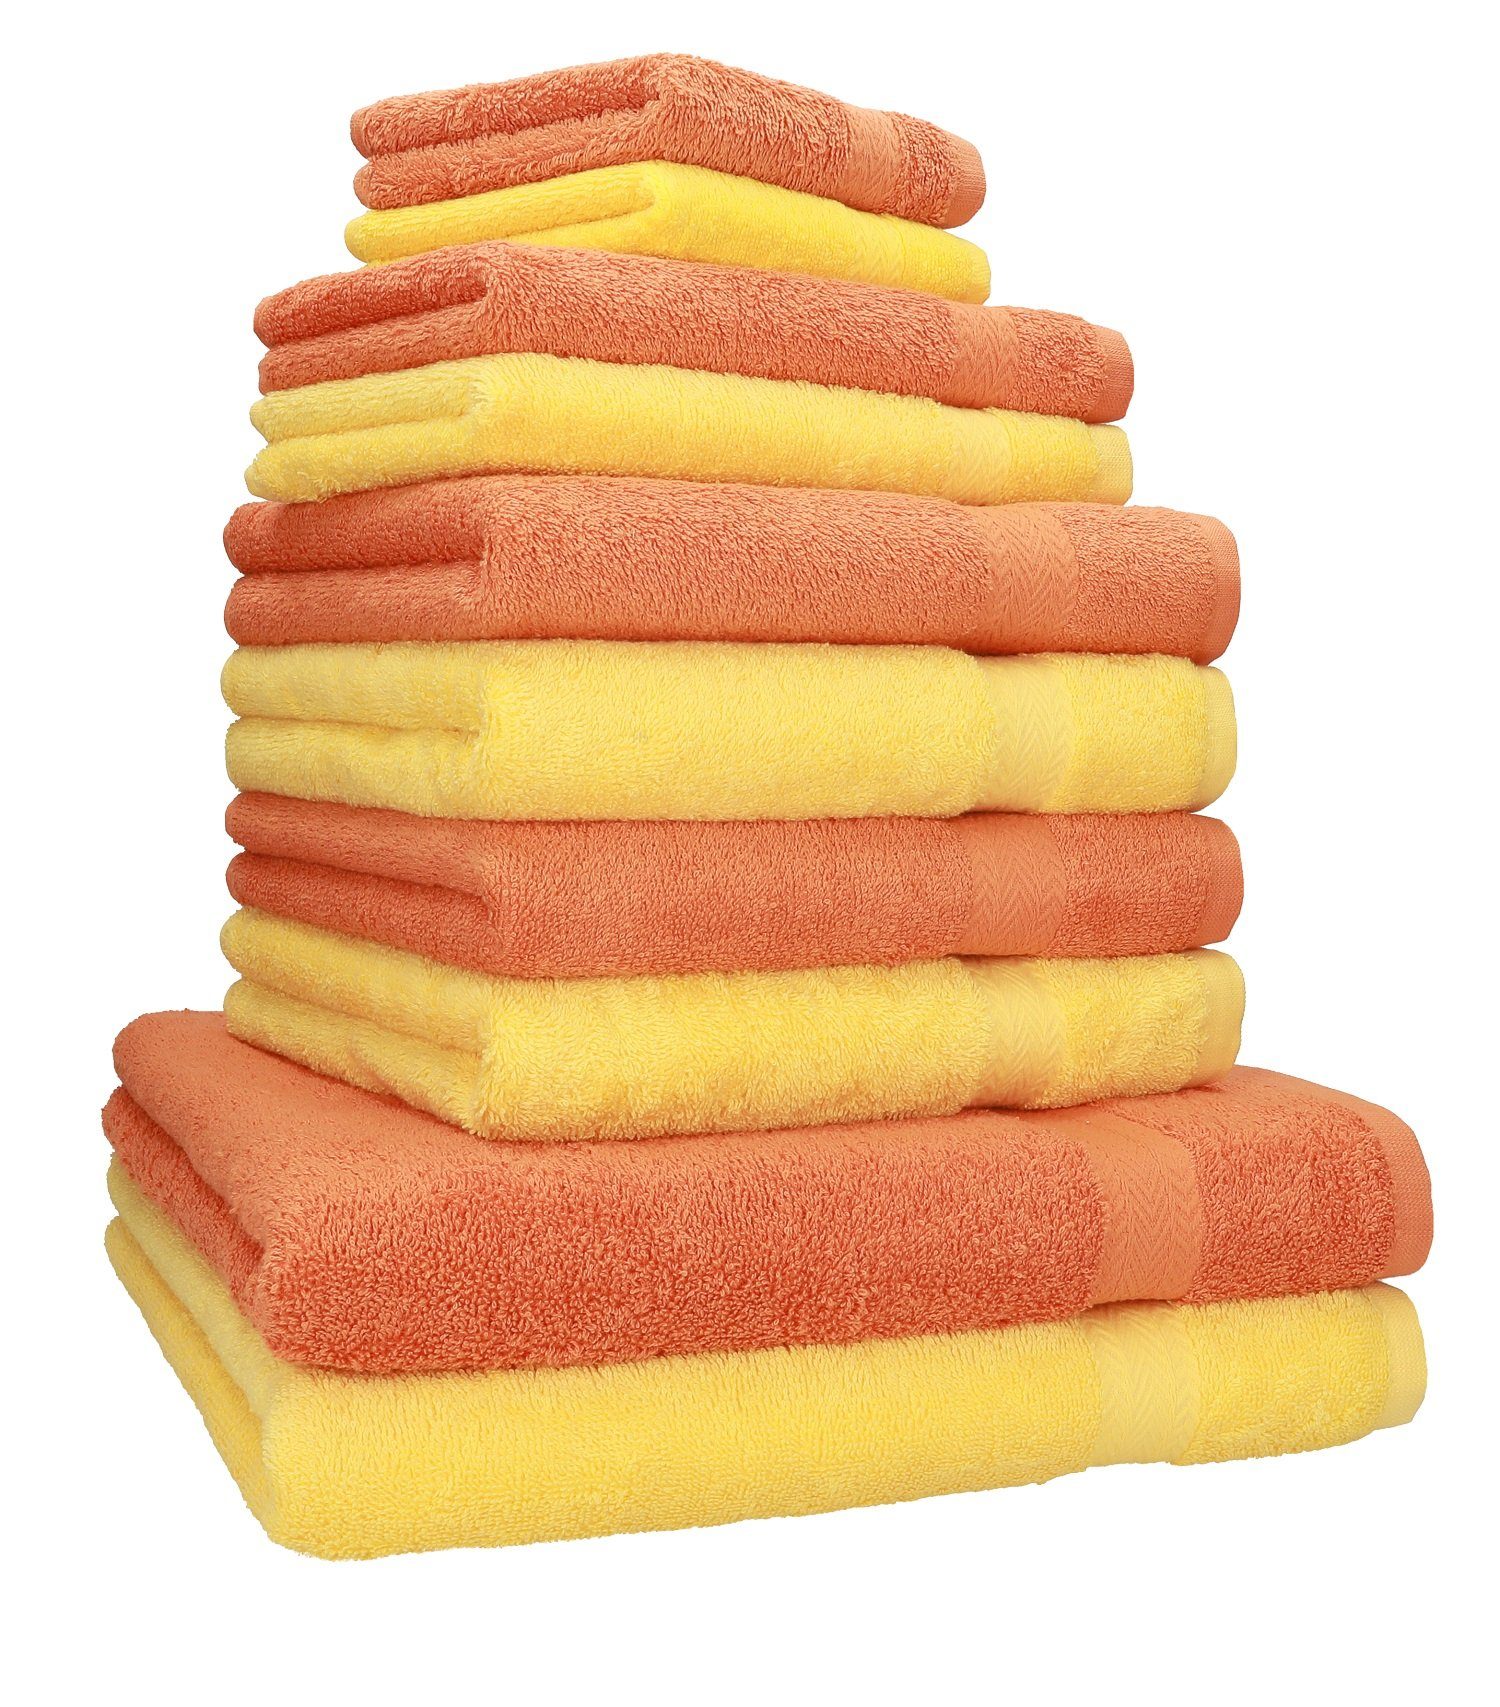 Betz Handtuch Set 10-TLG. Handtuch-Set Classic Farbe orange und gelb, 100% Baumwolle